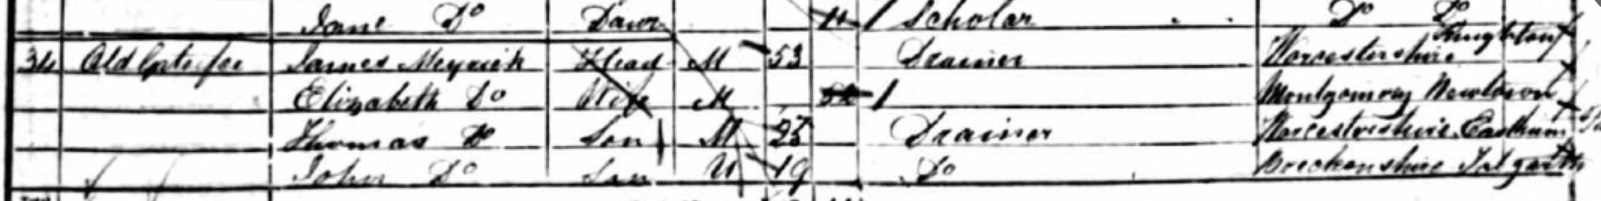 1851 census Meyrick